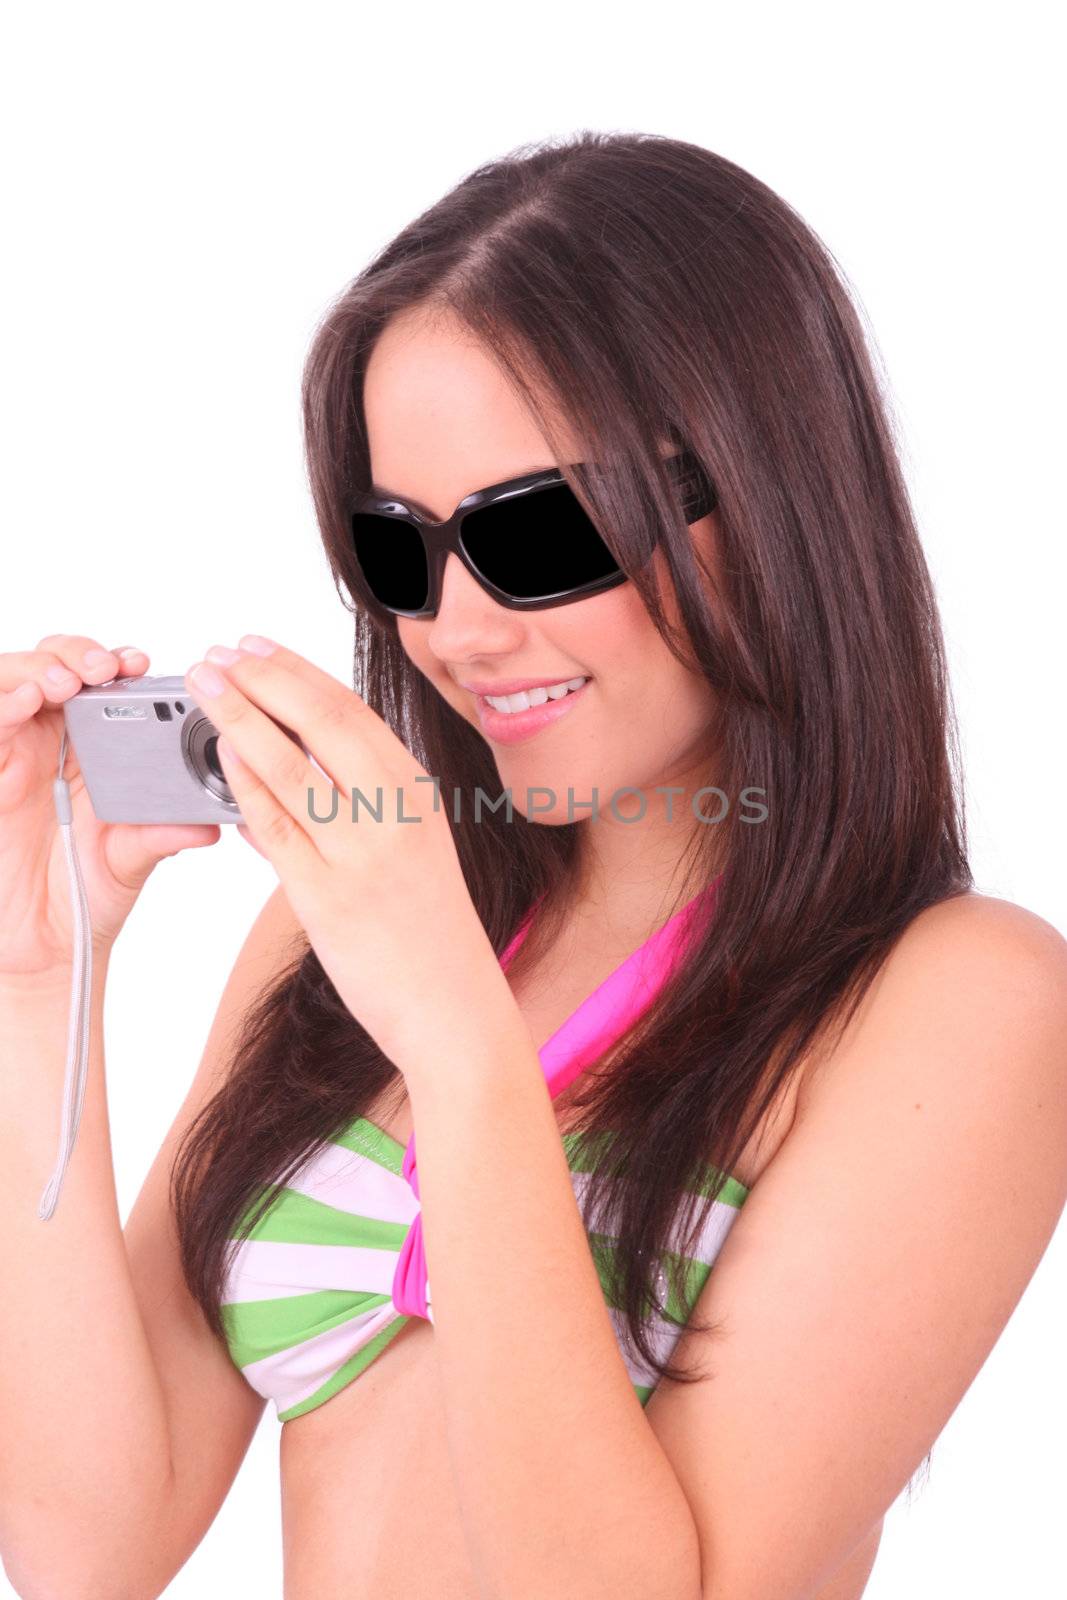 Young woman using camera by dacasdo